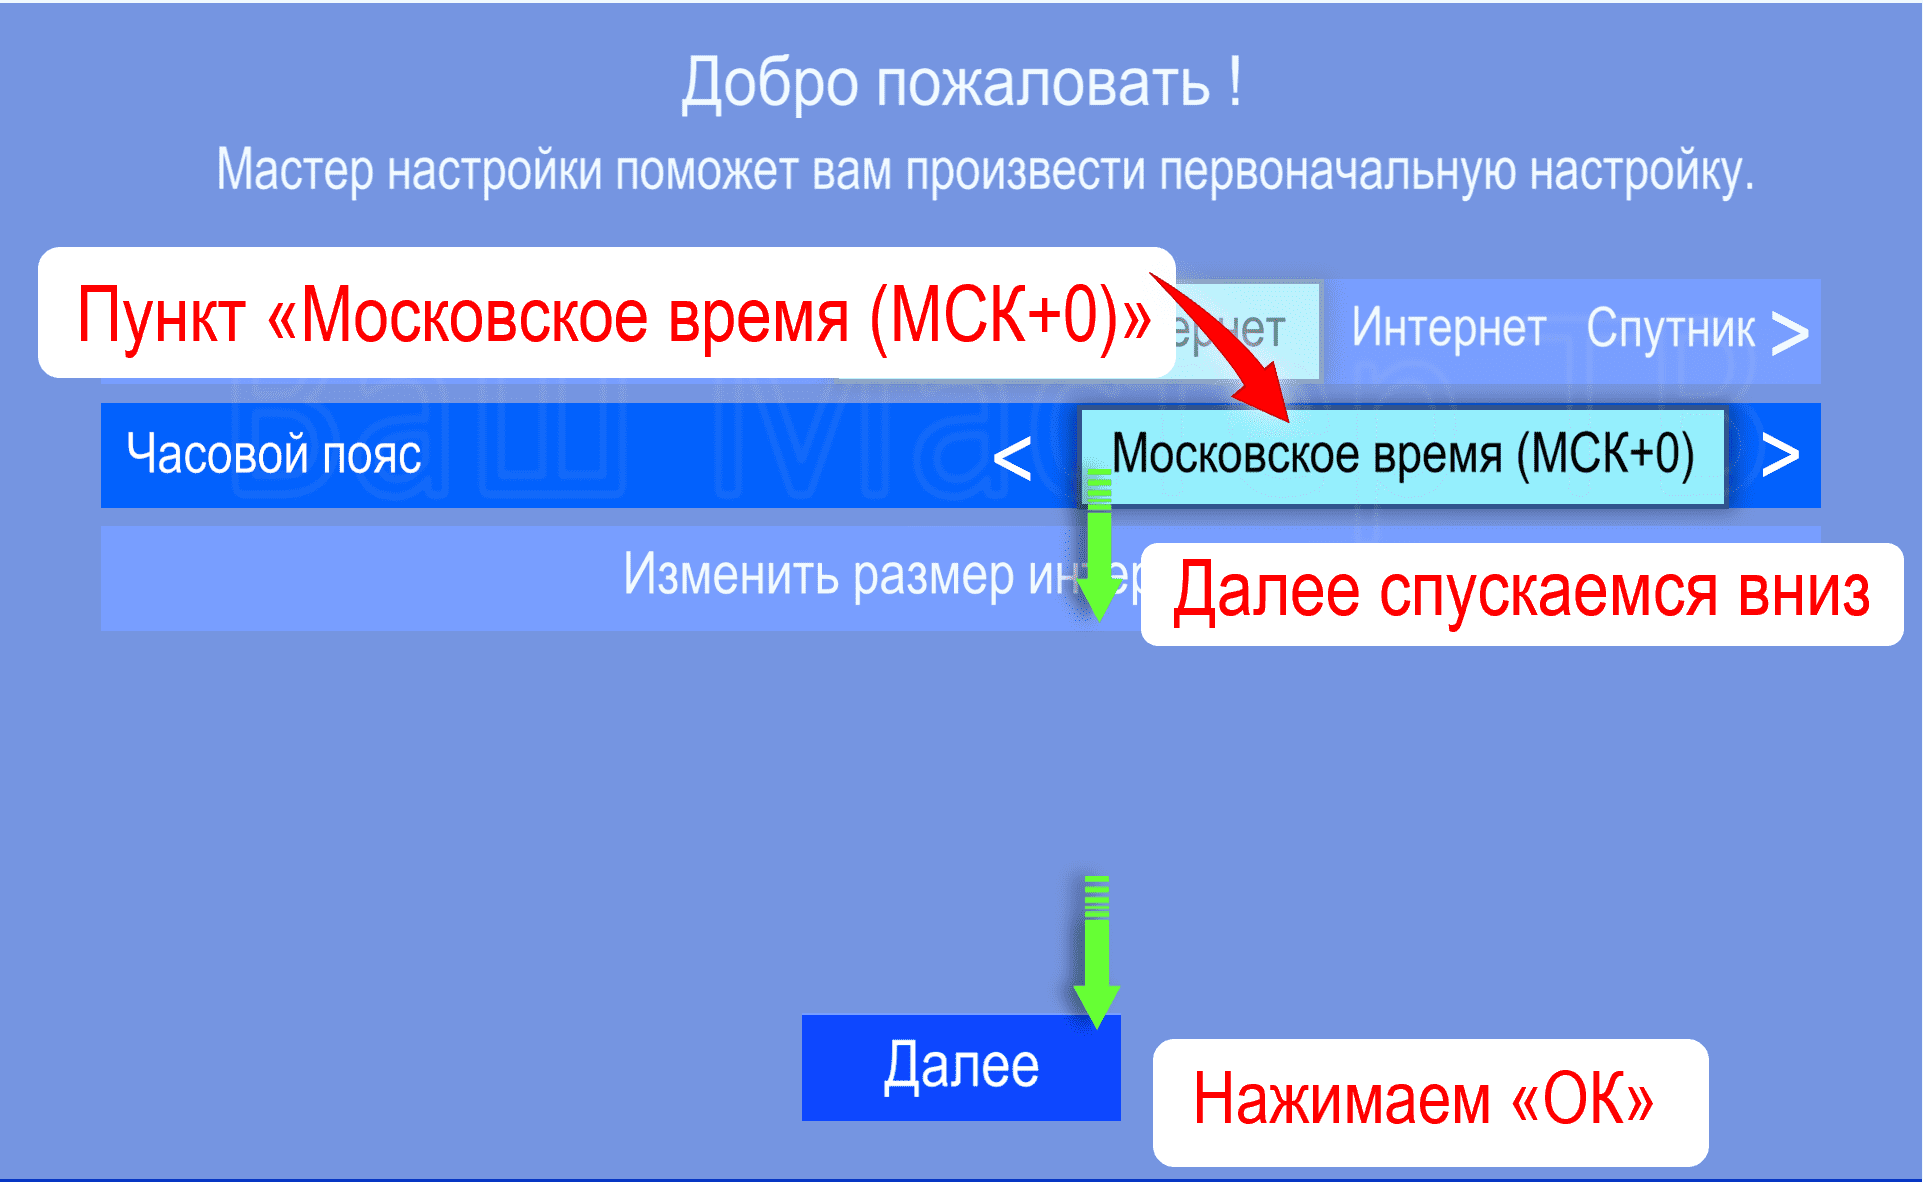 пункт «московское время (МСК+0)» на приёмниках Триколор GS b520, b531, b532, b534, b527, b528, c592